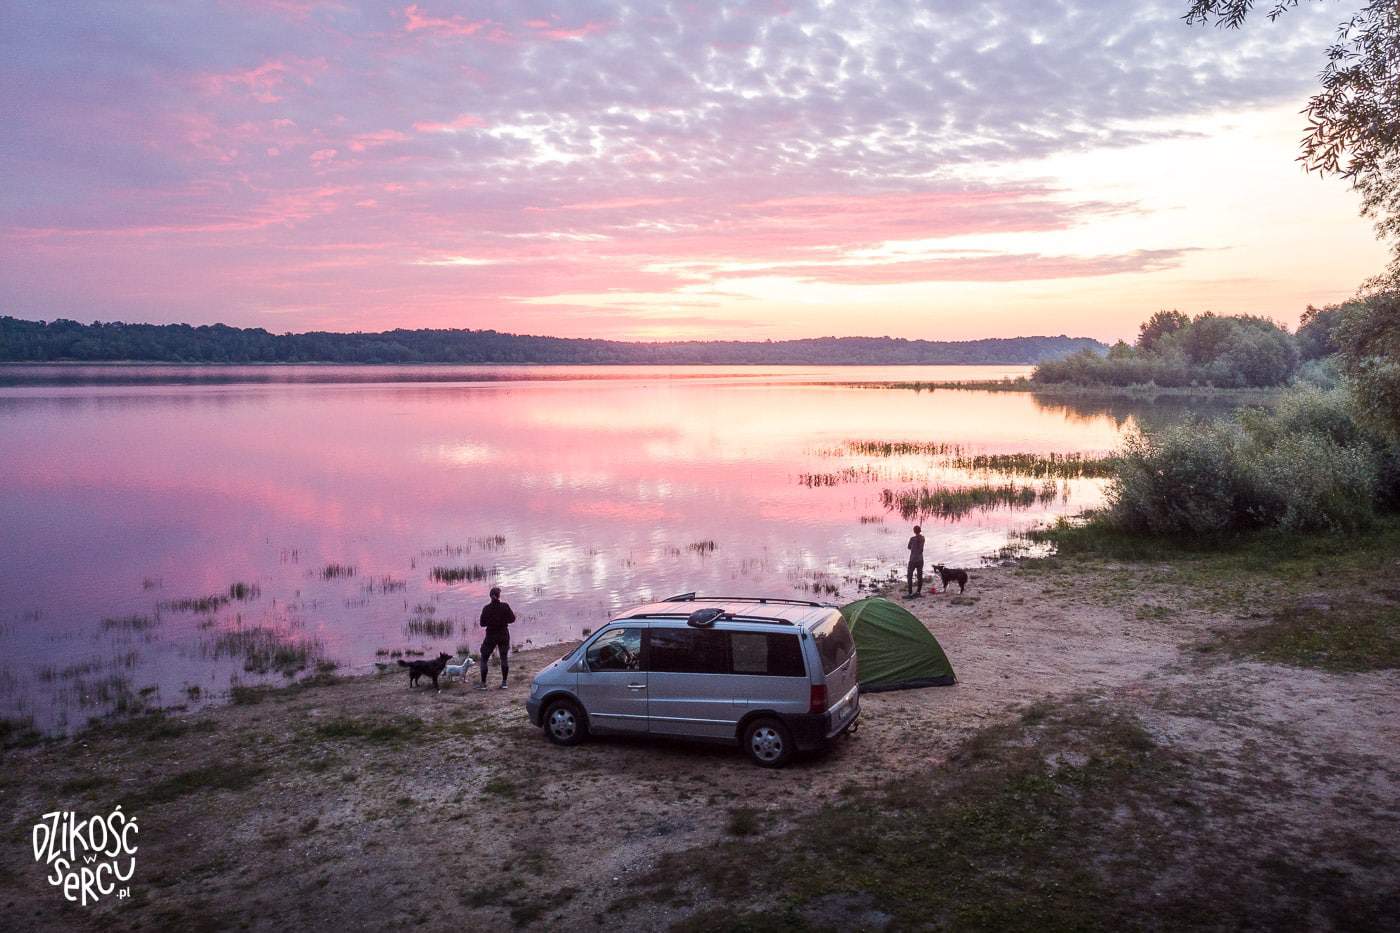 Różowy wschód słońca nad jeziorem, vanflife, auto i namiot, dwie dziewczyny z psami